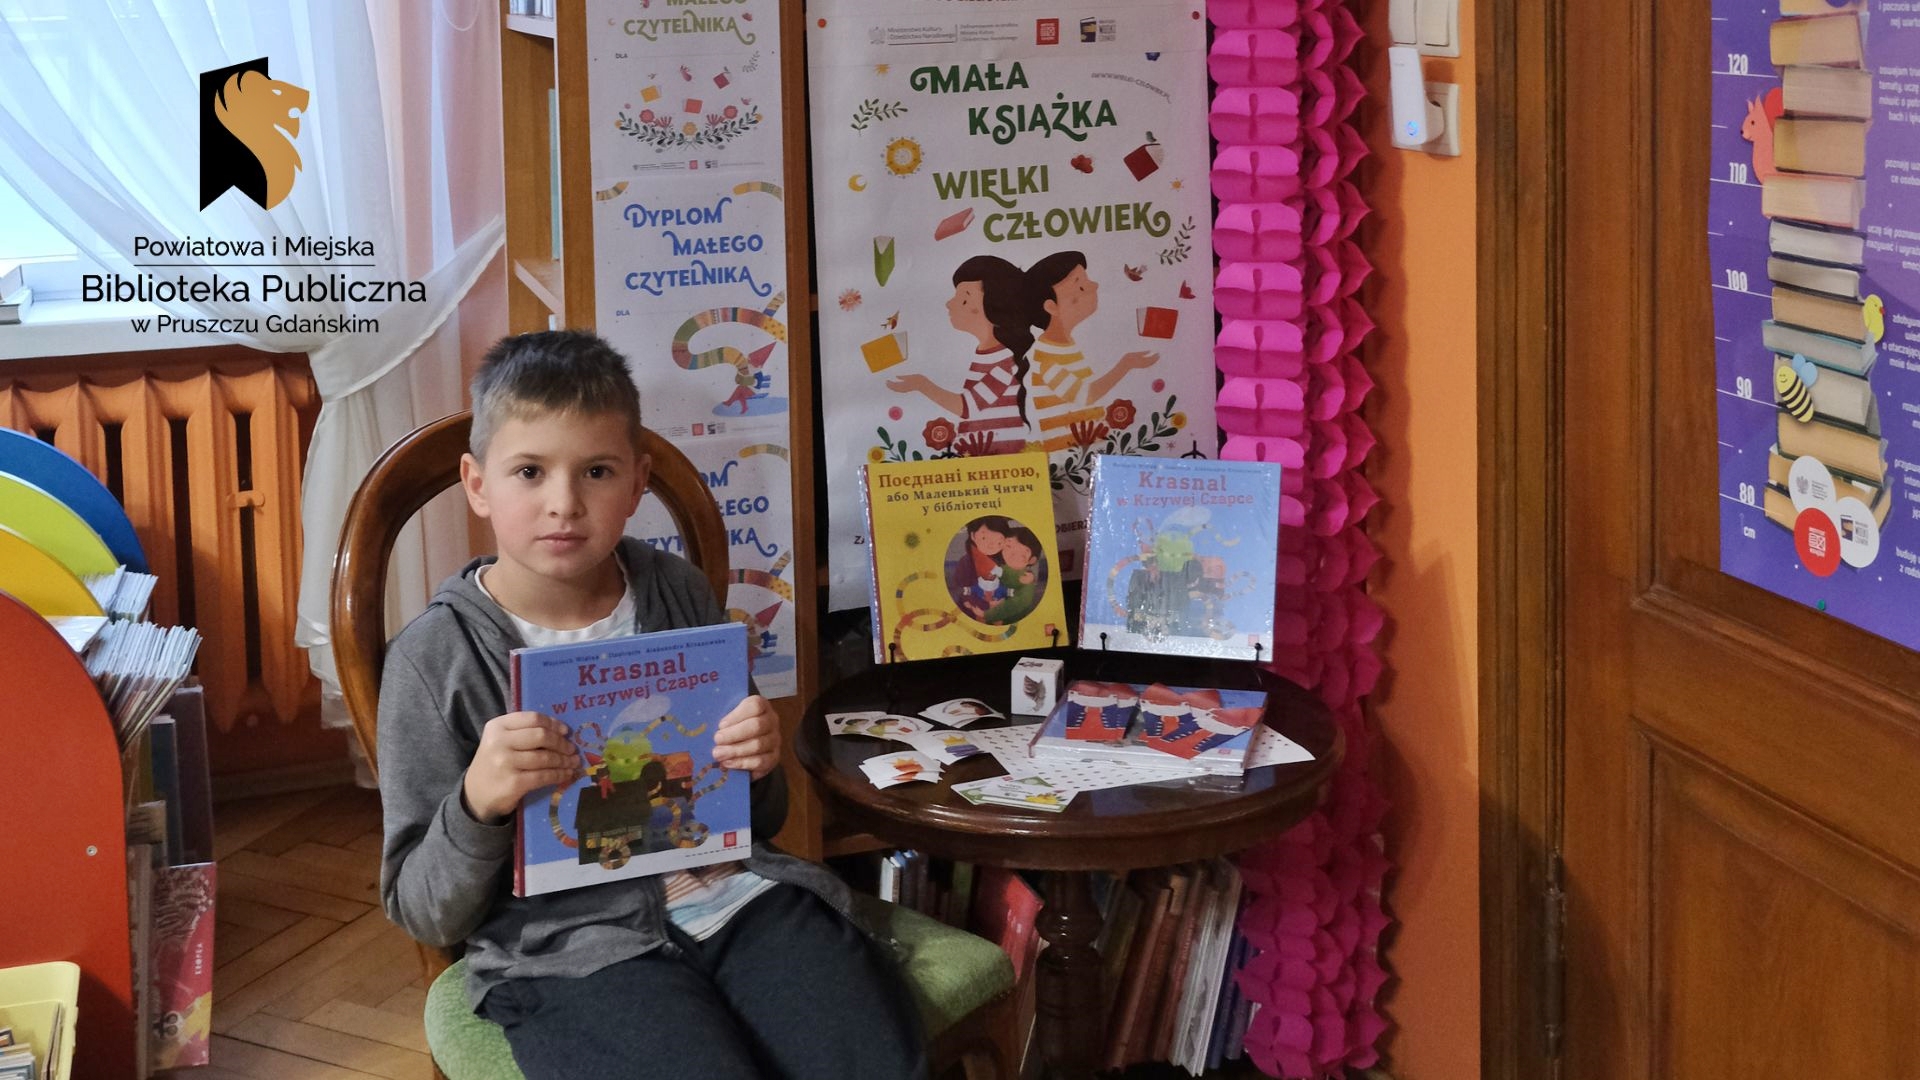 Chłopiec siedzi na krześle i trzyma w rękach książkę pt. Krasnal w Krzywej Czapce. Obok na stoliku wyeksponowane te same książki, jedna z nich w języku ukraińskim. Obok książek: papierowa kostka, naklejki i plakietka do zbierania nalepek. Za stolikiem plakat z napisem: mała książka-wielki człowiek.